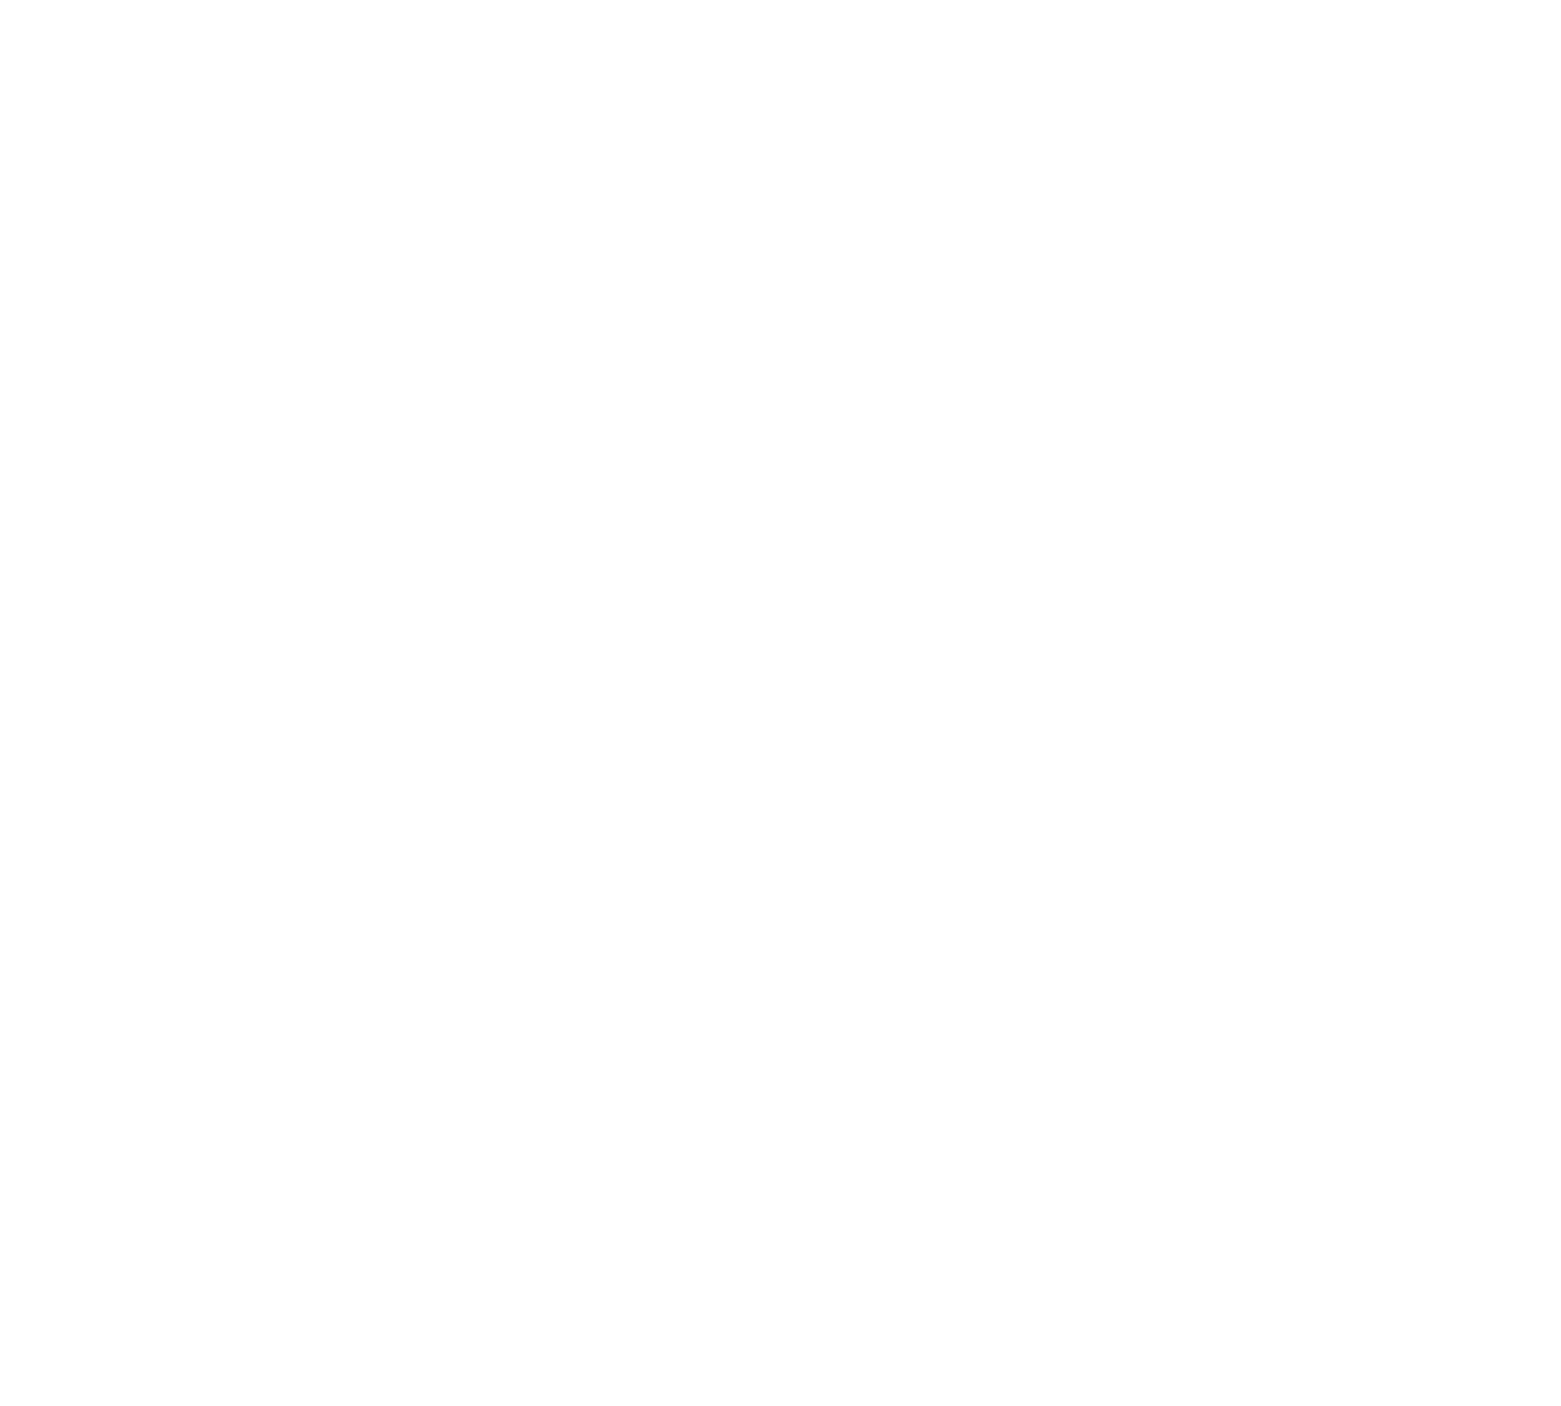 Coupa logo pour fonds sombres (PNG transparent)